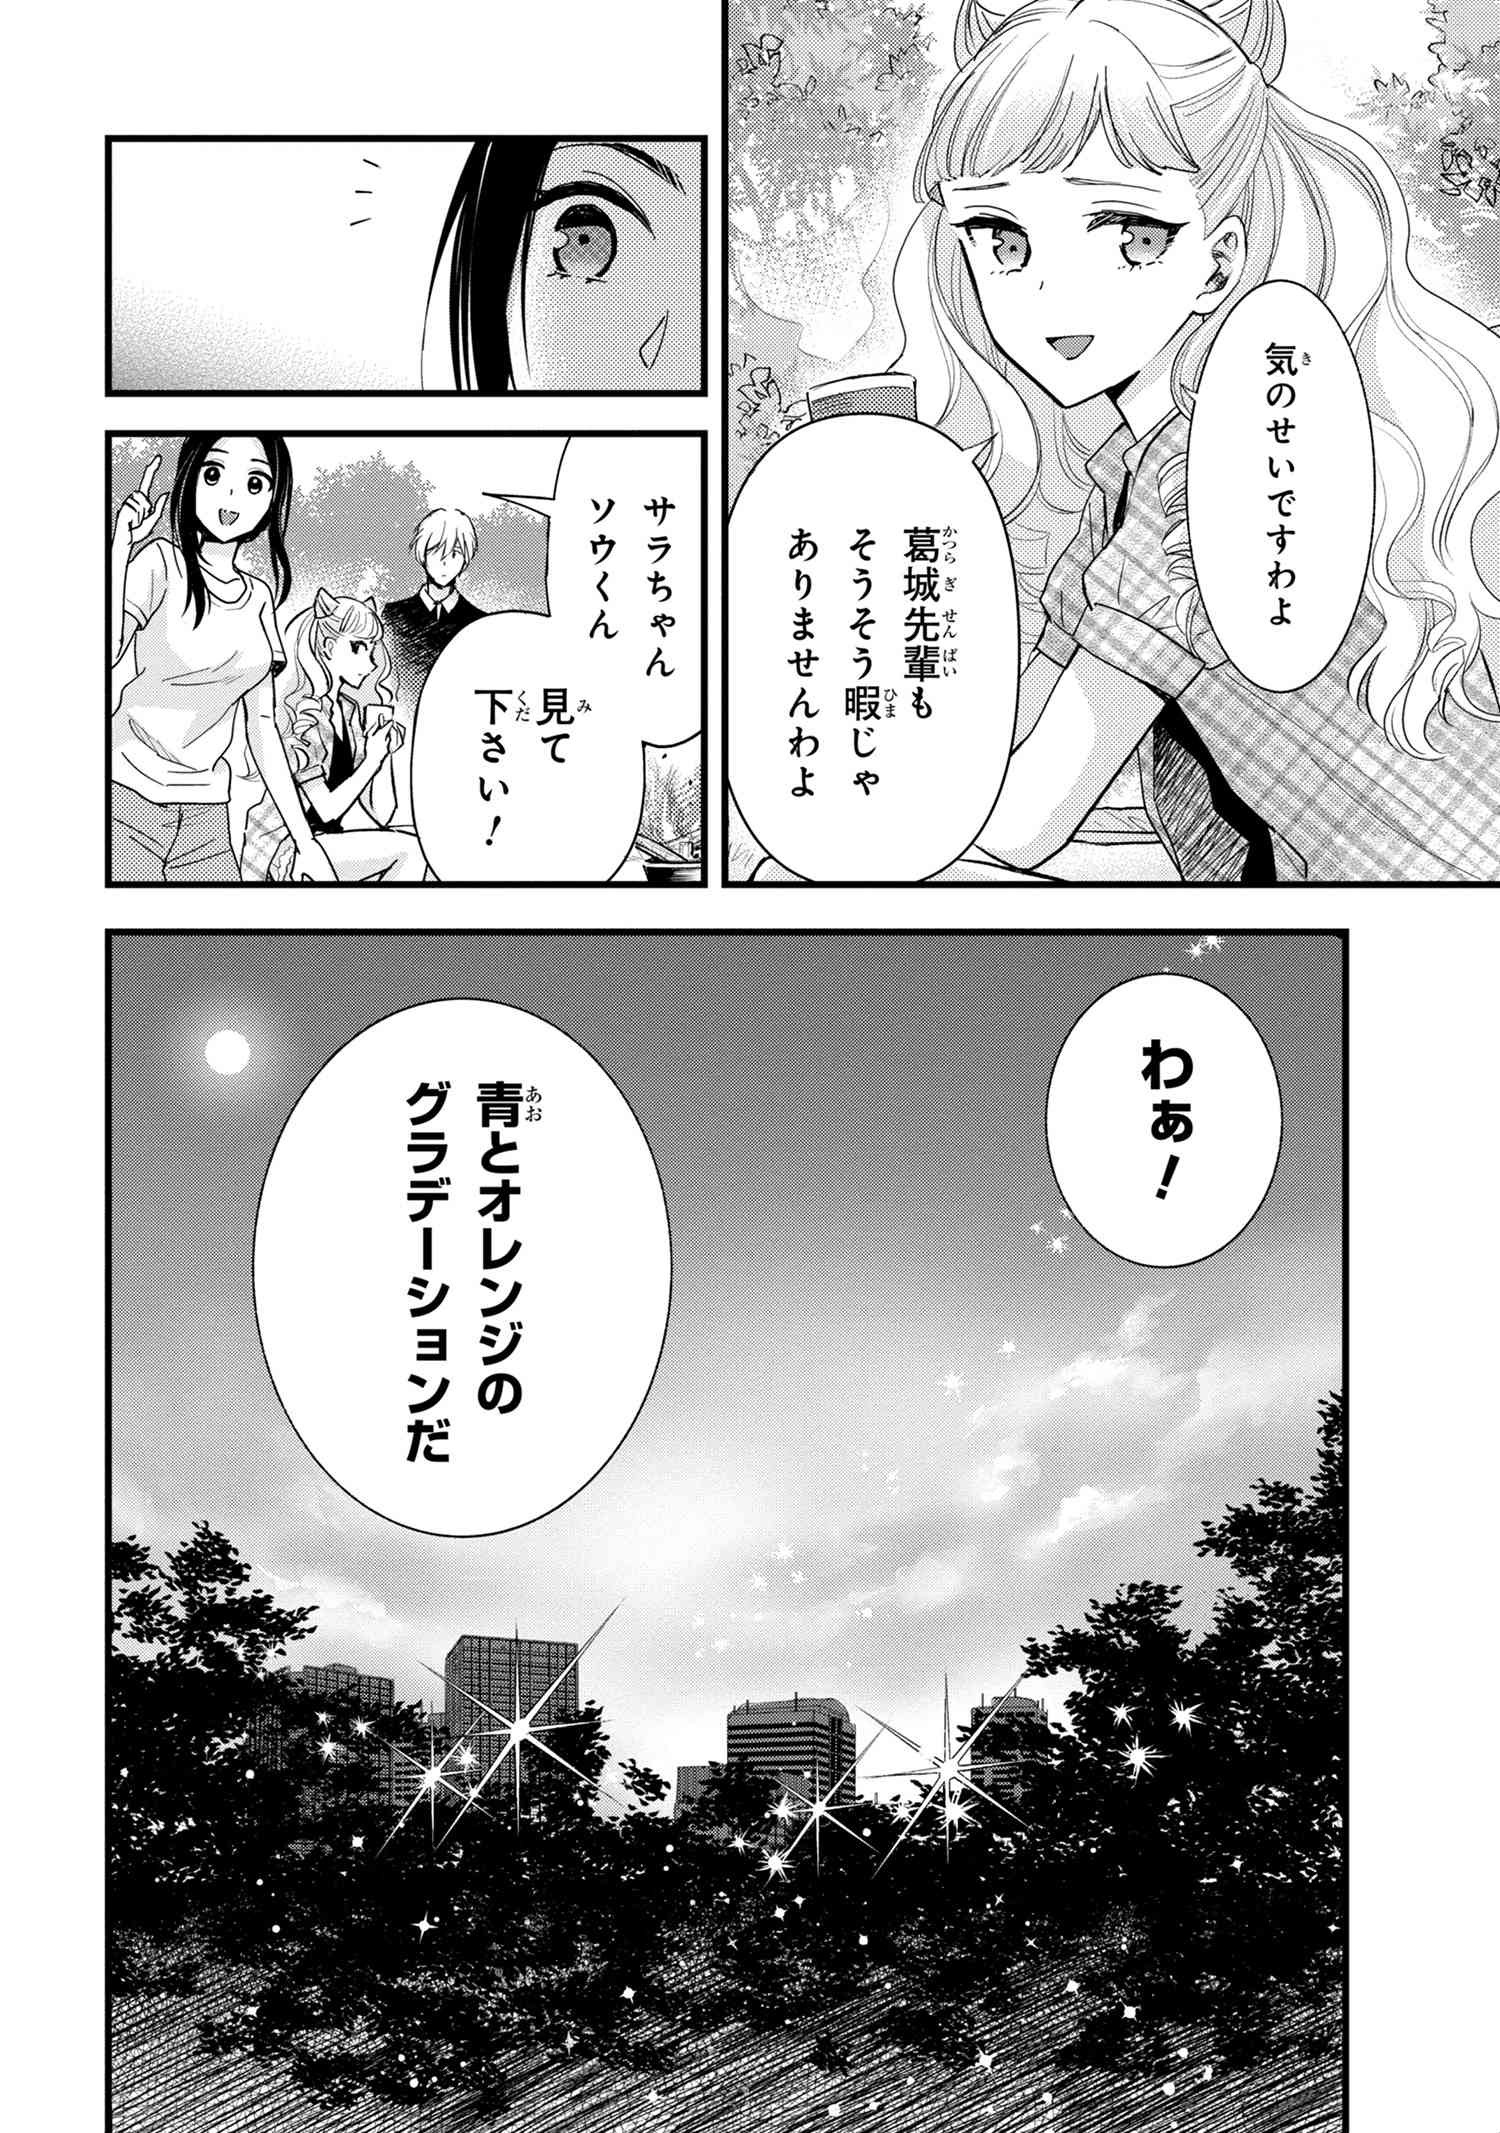 Reiko no Fuugi Akuyaku Reijou to Yobarete imasu ga, tada no Binbou Musume desu - Chapter 12.7 - Page 1